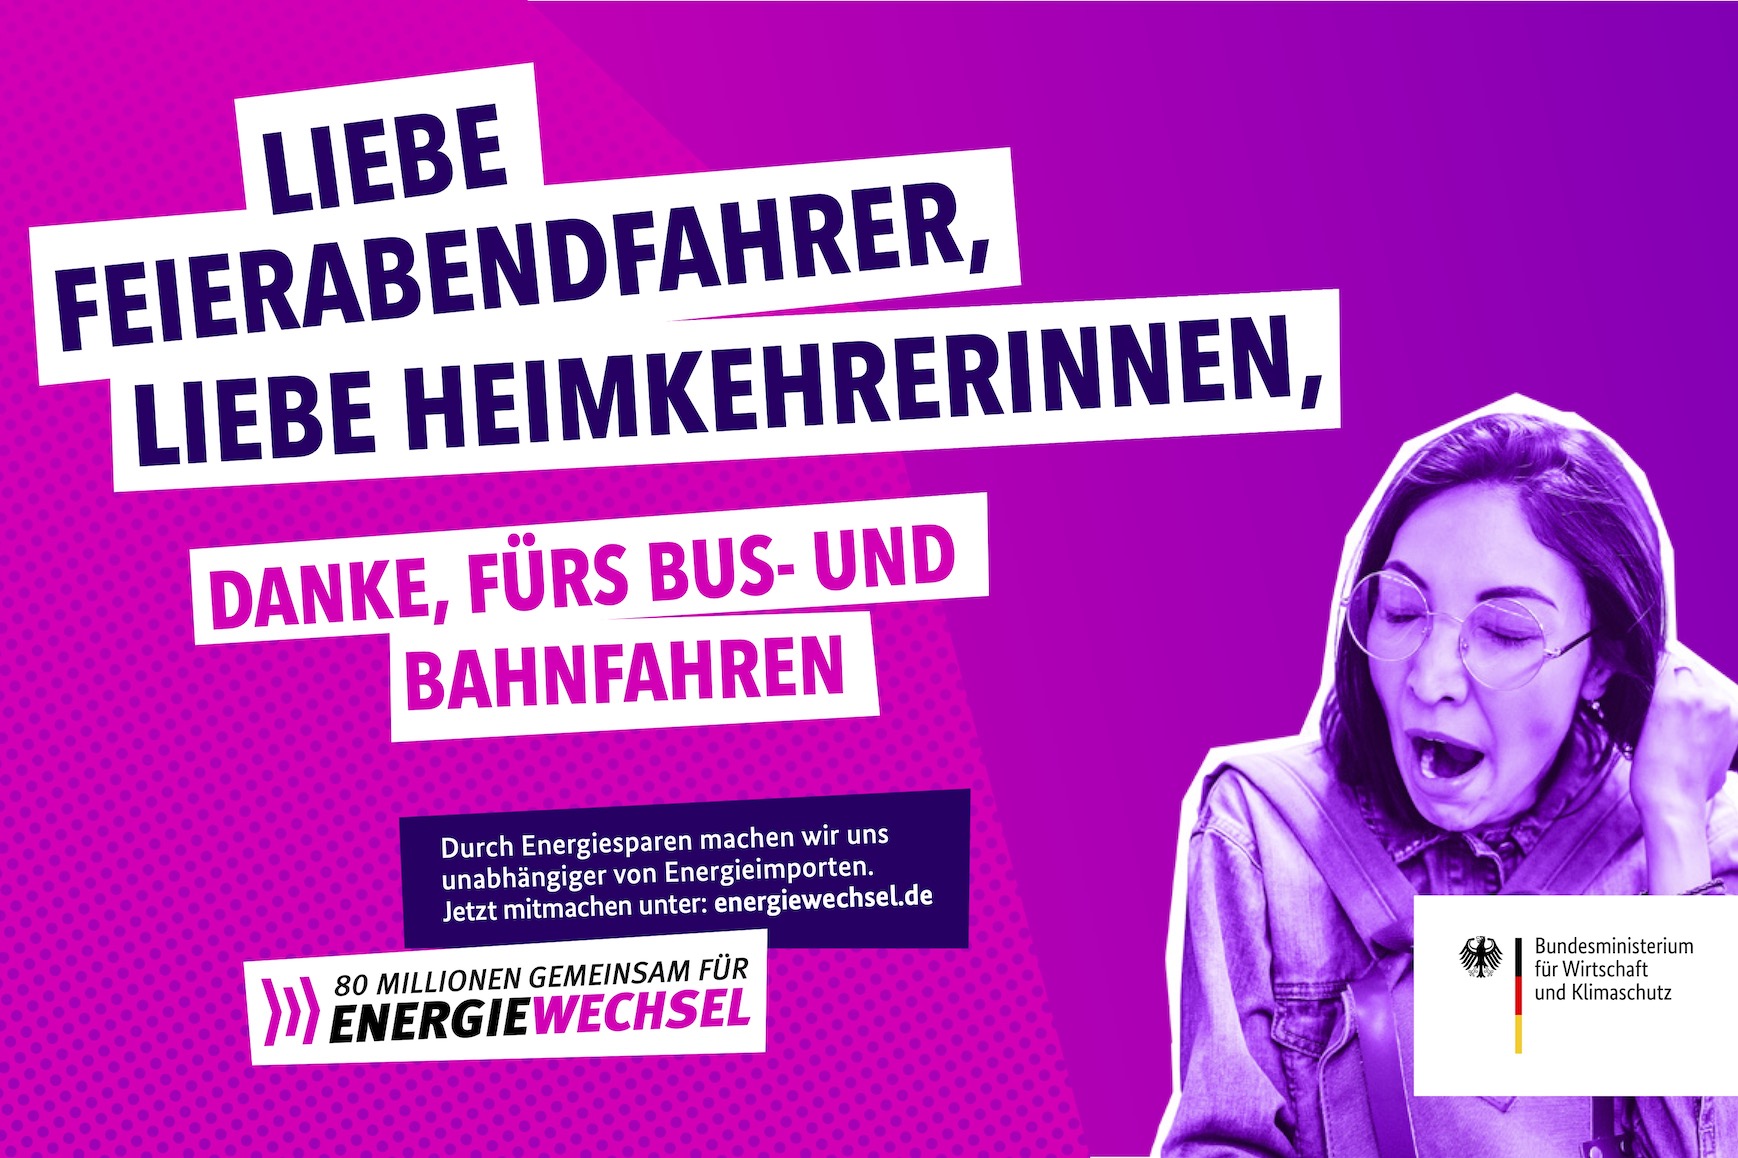 Kampagnenmotiv „Liebe Feierabendfahrer, liebe Heimkehrerinnnen” | 80 Millionen gemeinsam für Energiewechsel